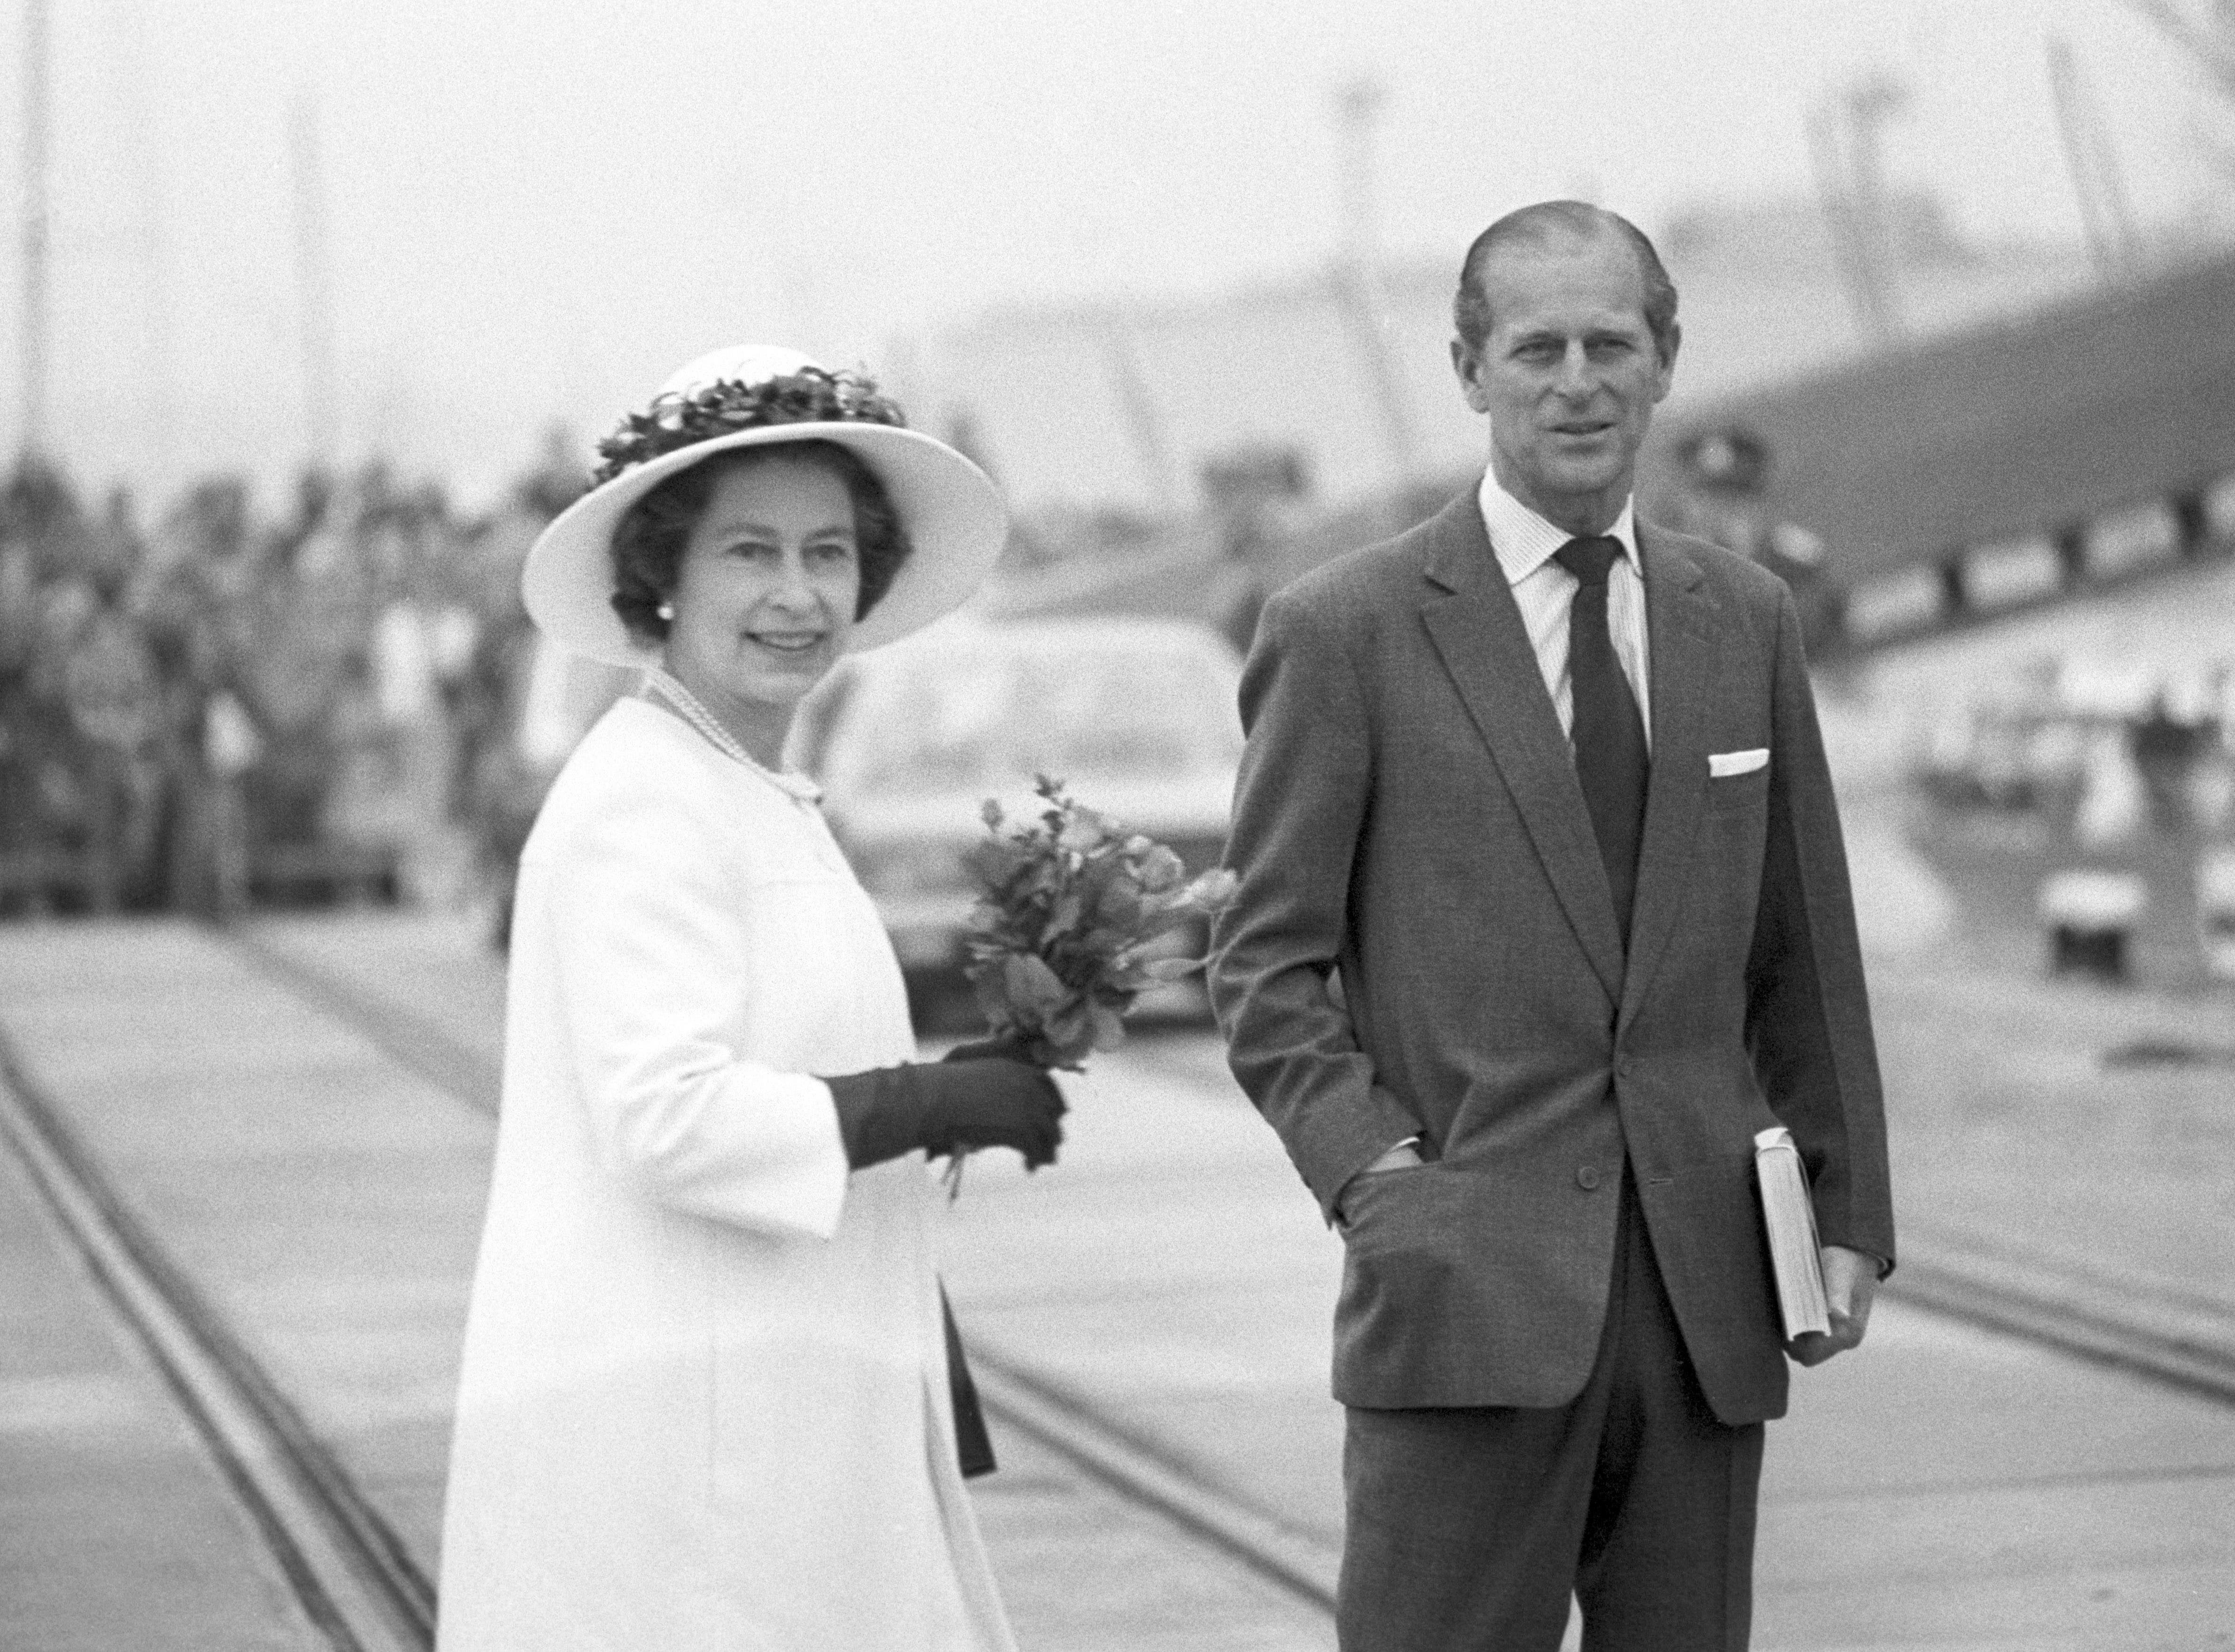 Der rüstige Marineoffizier und die stets elegant gekleidete Queen - ein Paar das gut in die traditionelle Welt der Royals passte. 